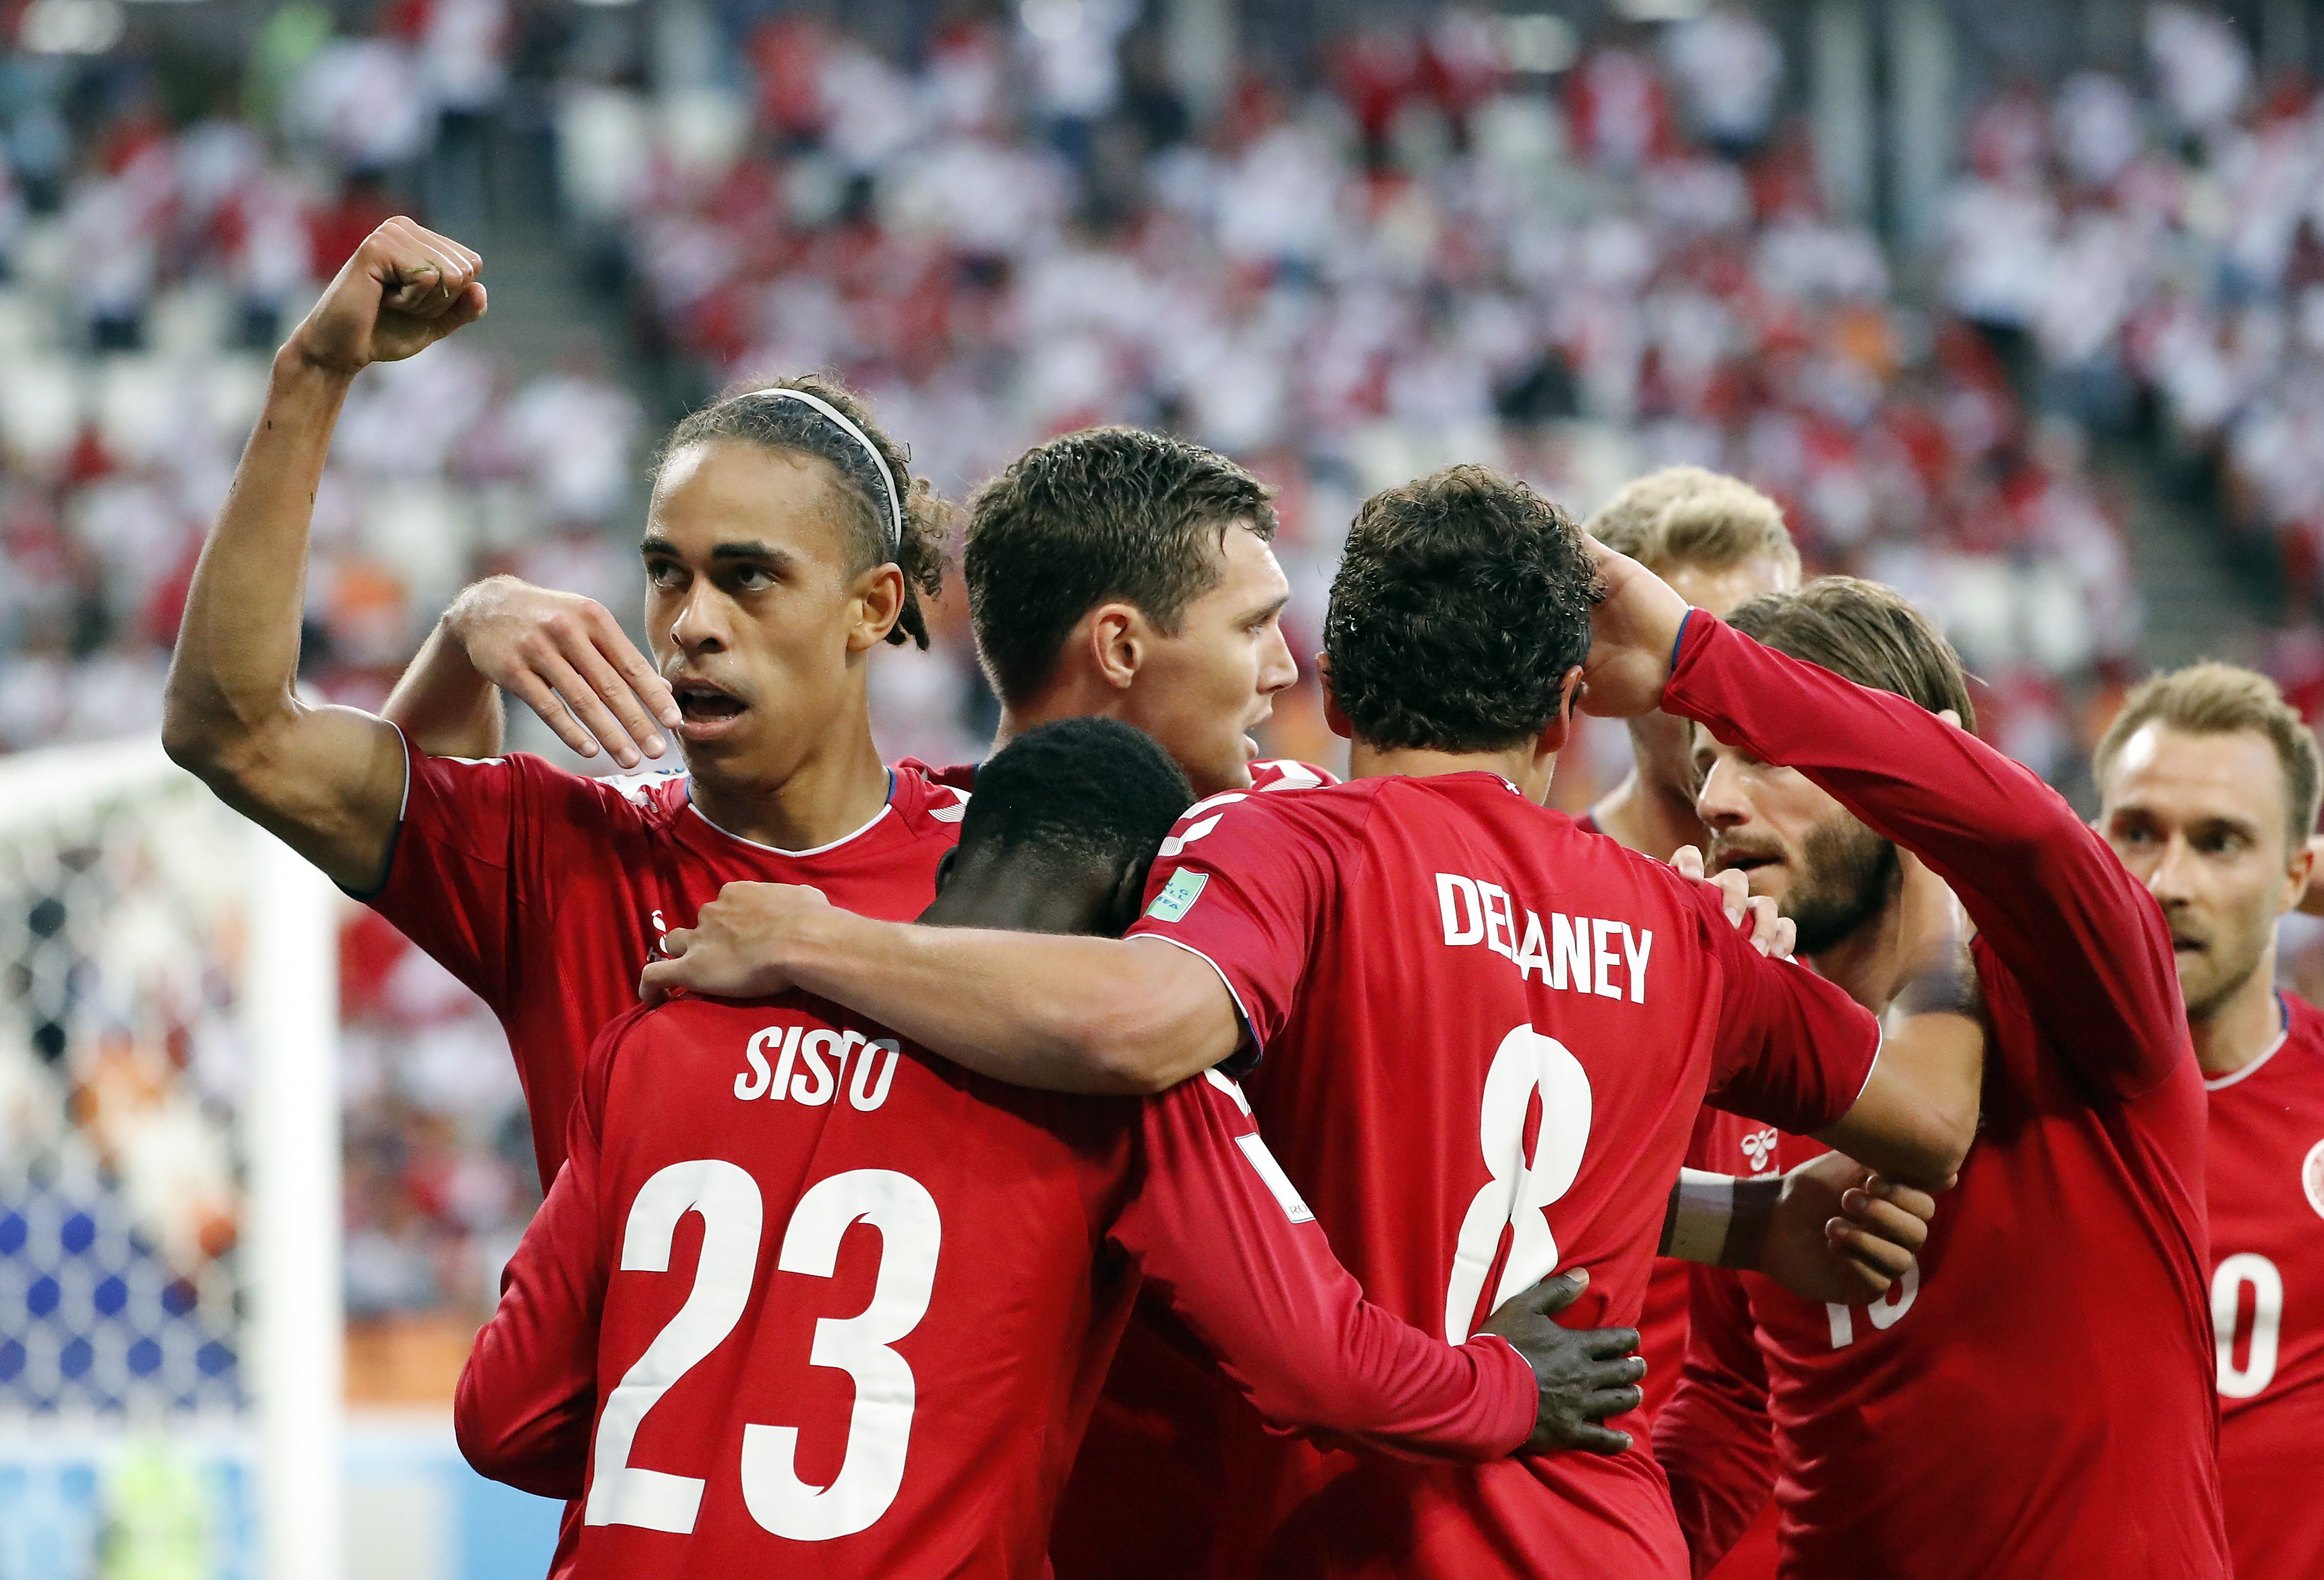 Dinamarca guanya, però no convenç (0-1)